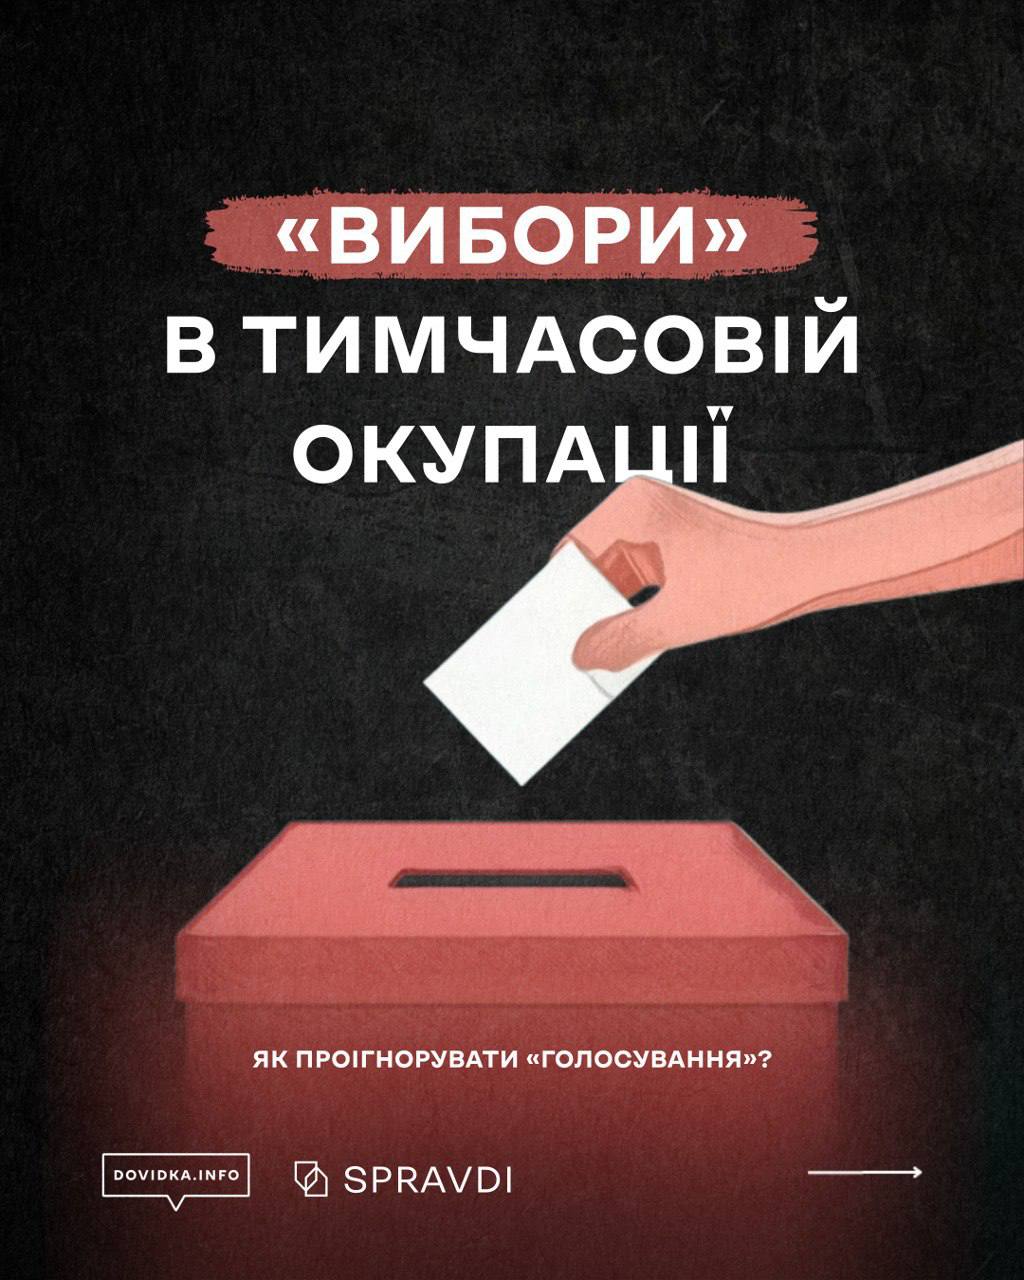 «Вибори» на ТОТ України: як діяти, щоб вашим голосом не скористалися загарбники